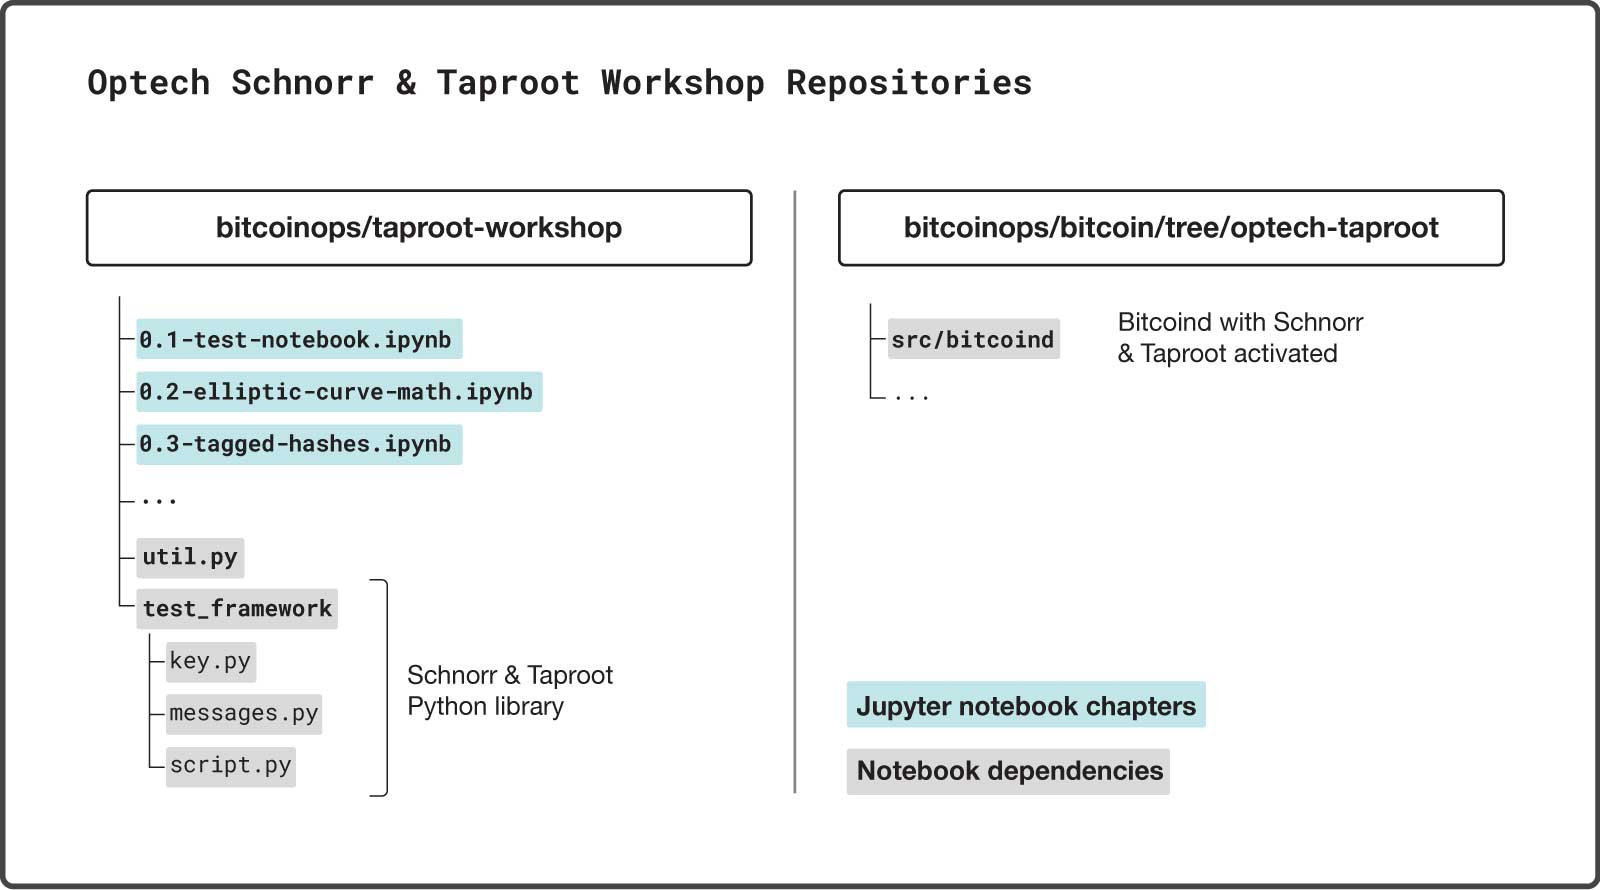 workshop_repositories